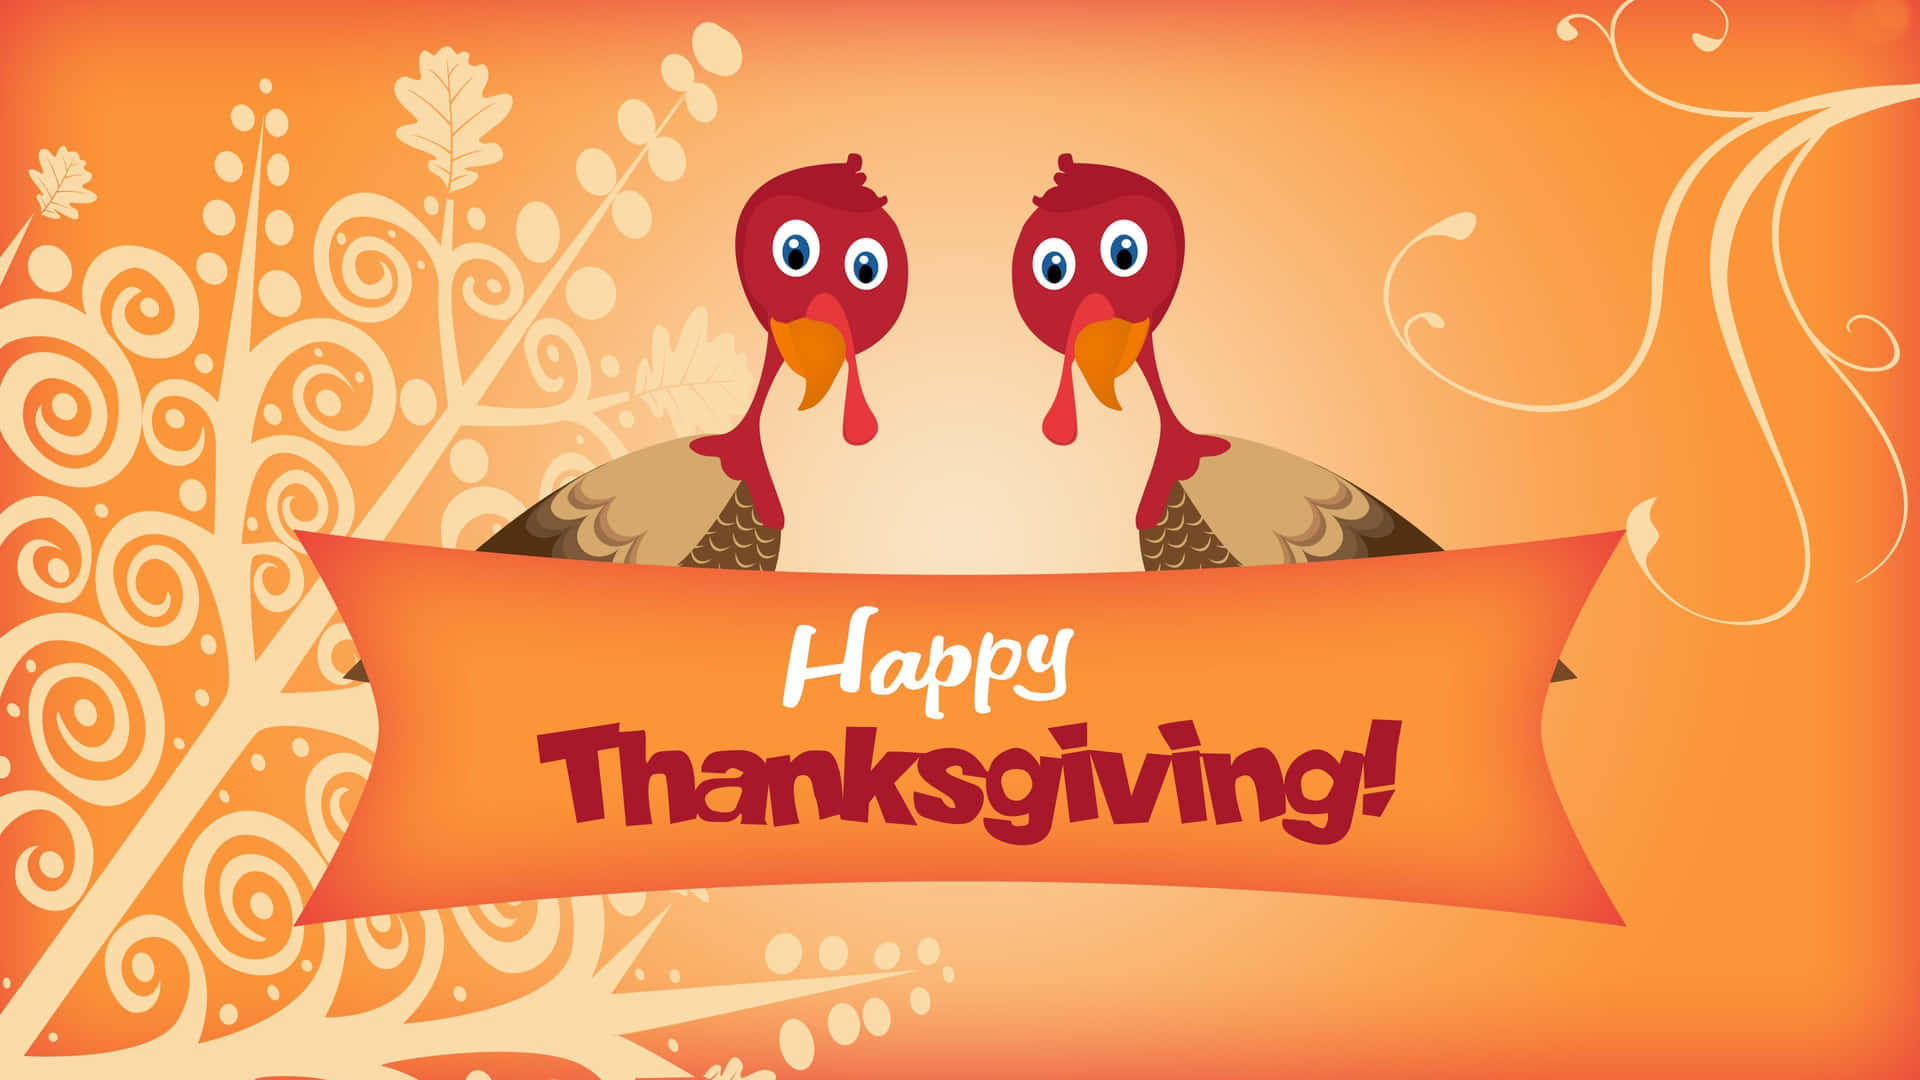 Låtoss Fira Thanksgiving Tillsammans Med En Dator- Eller Mobilbakgrundsbild! Wallpaper